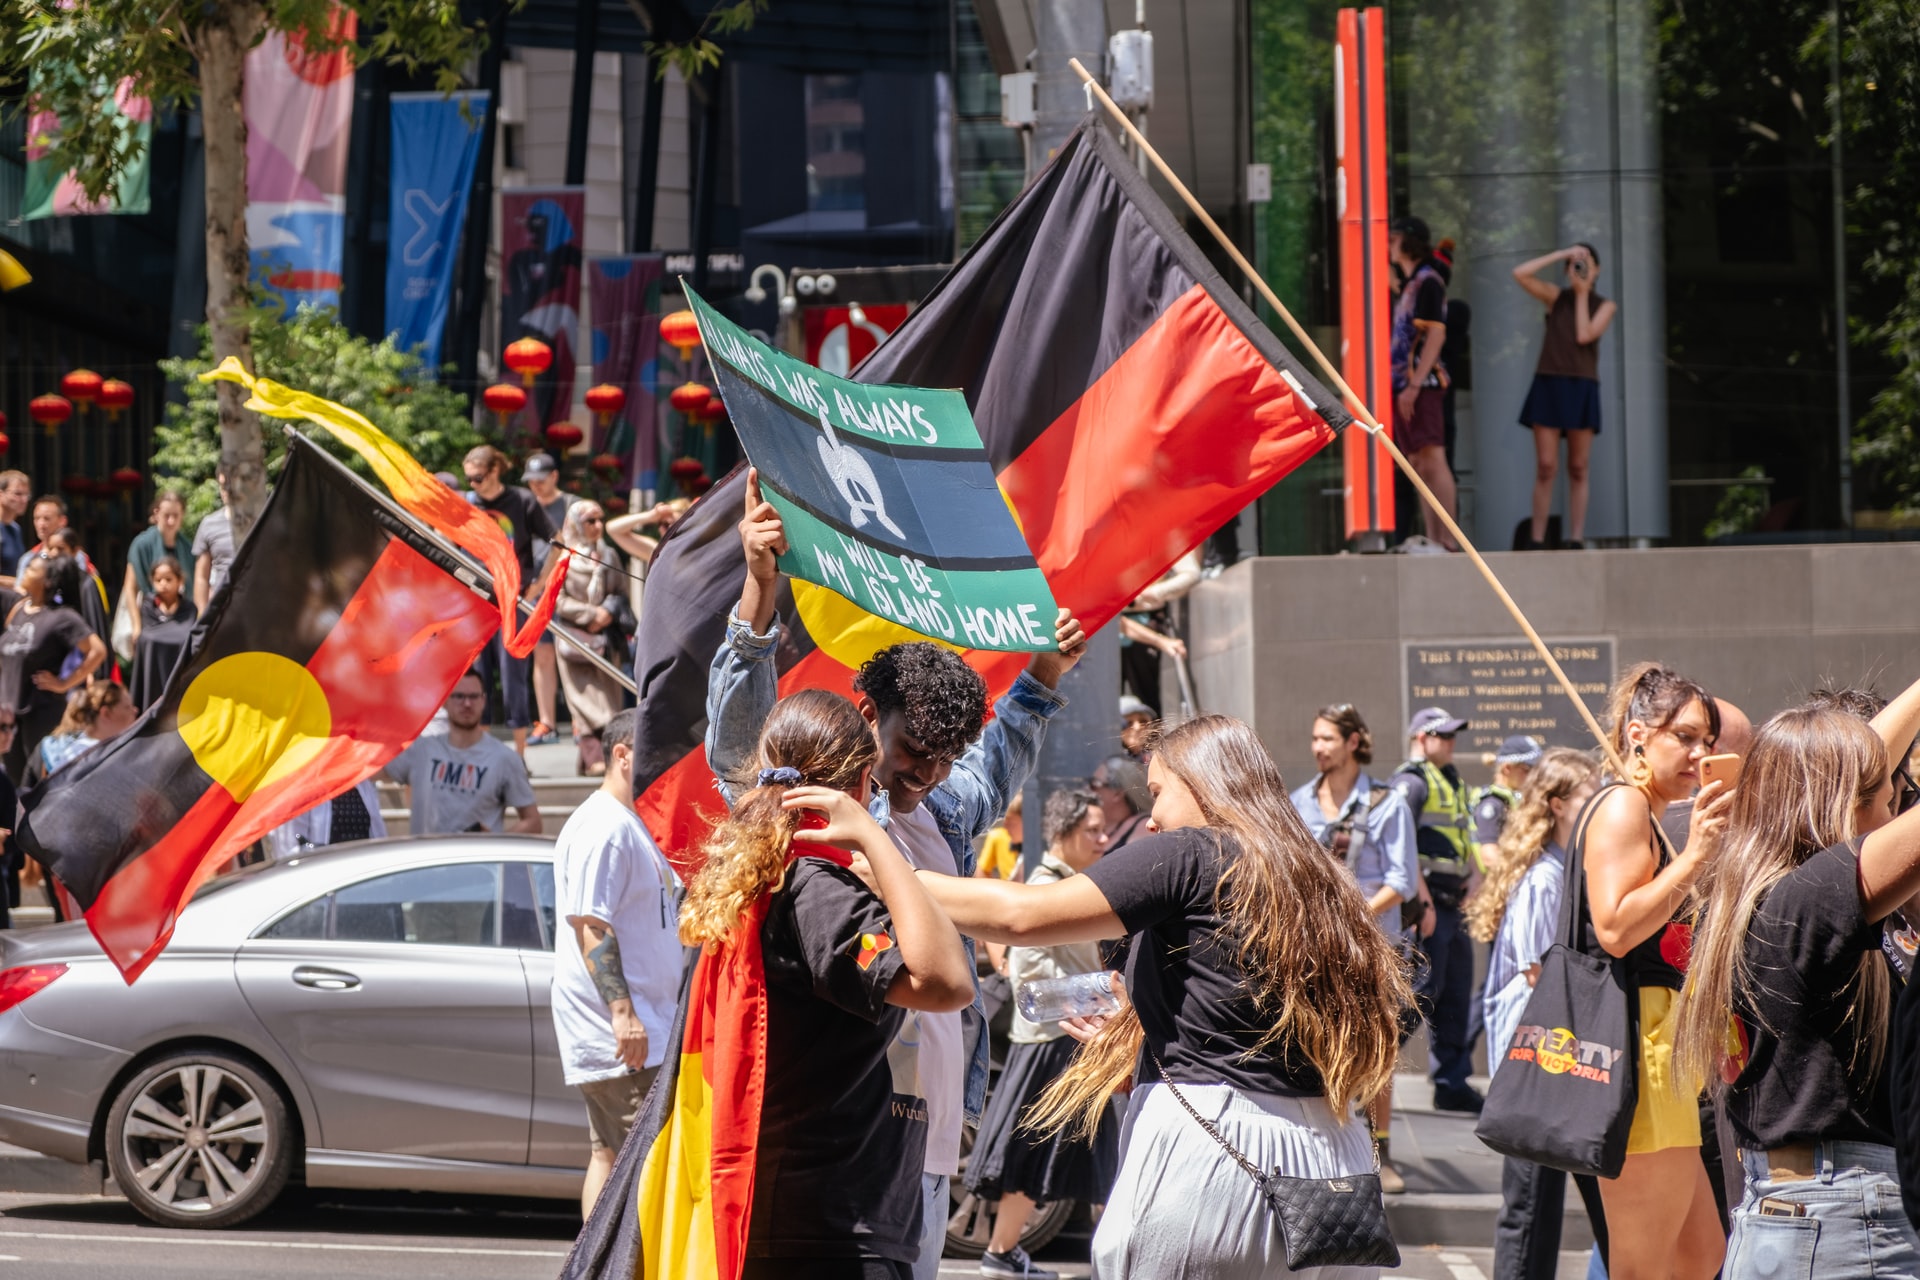 Aboriginal flags